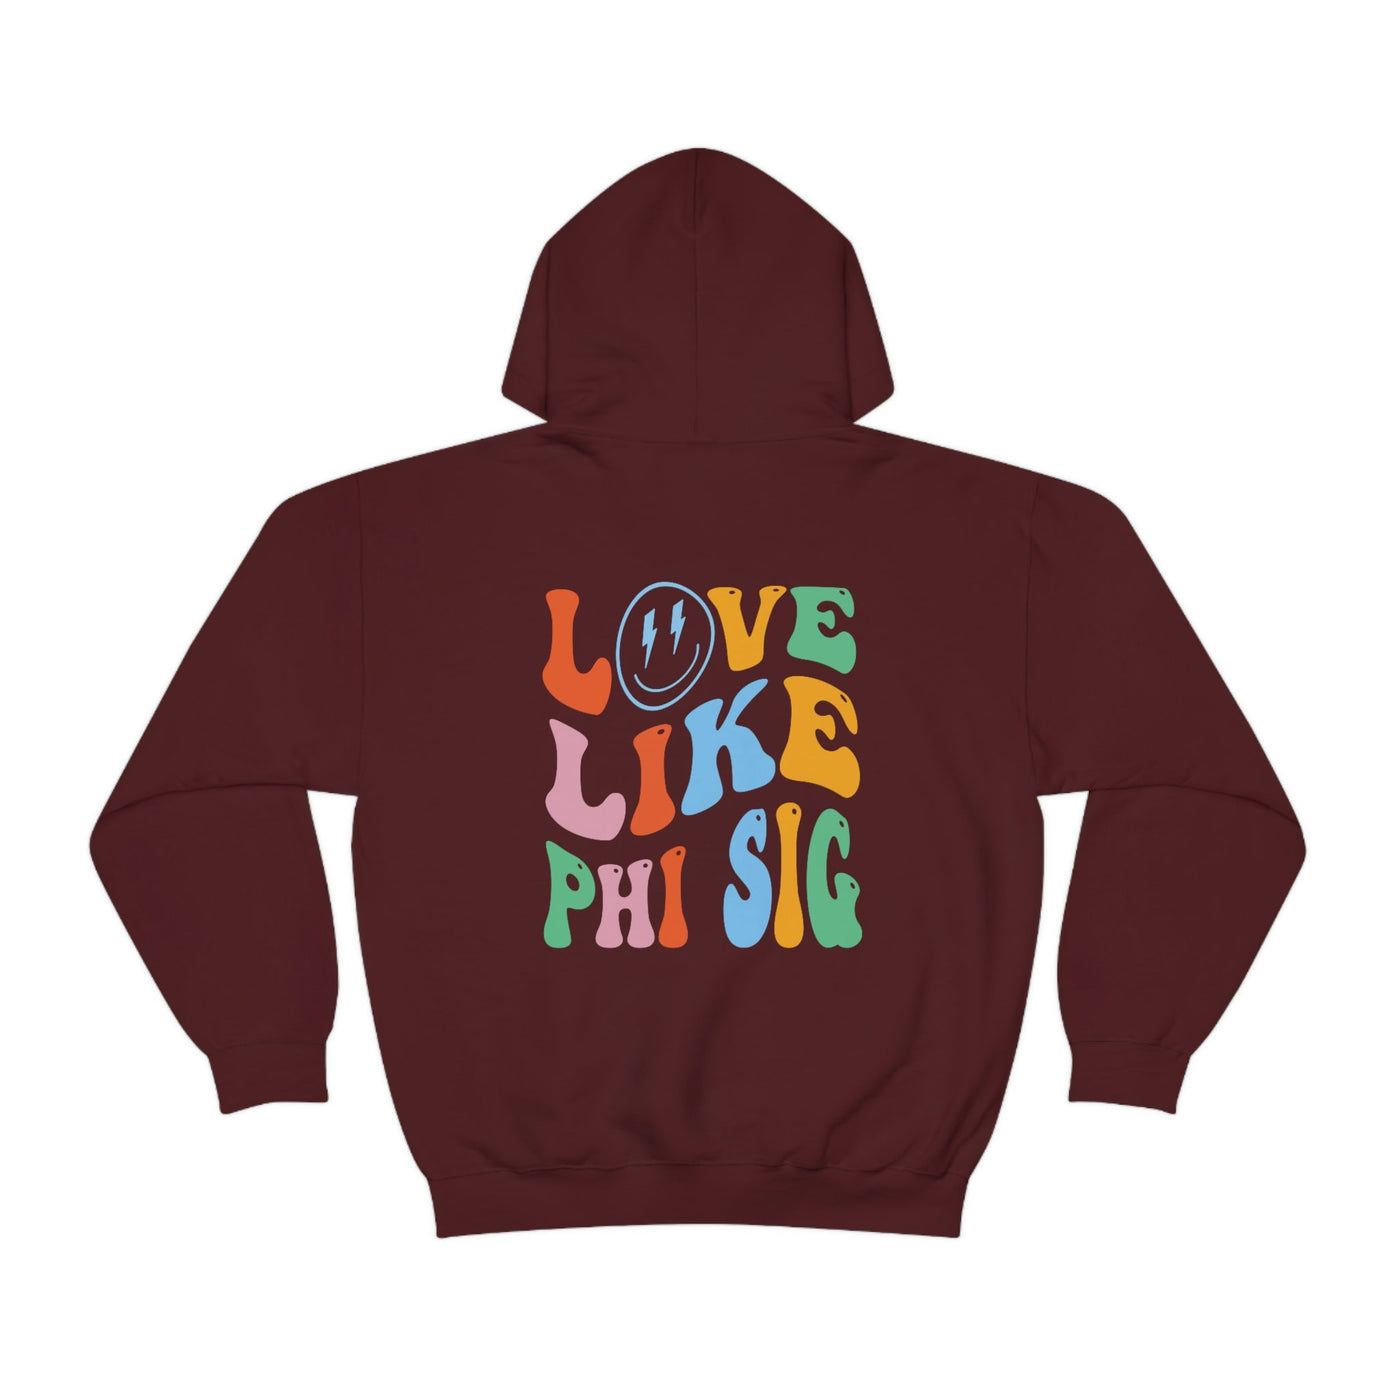 Phi Sigma Sigma Soft Sorority Sweatshirt | Love Like Phi Sig Sorority Hoodie